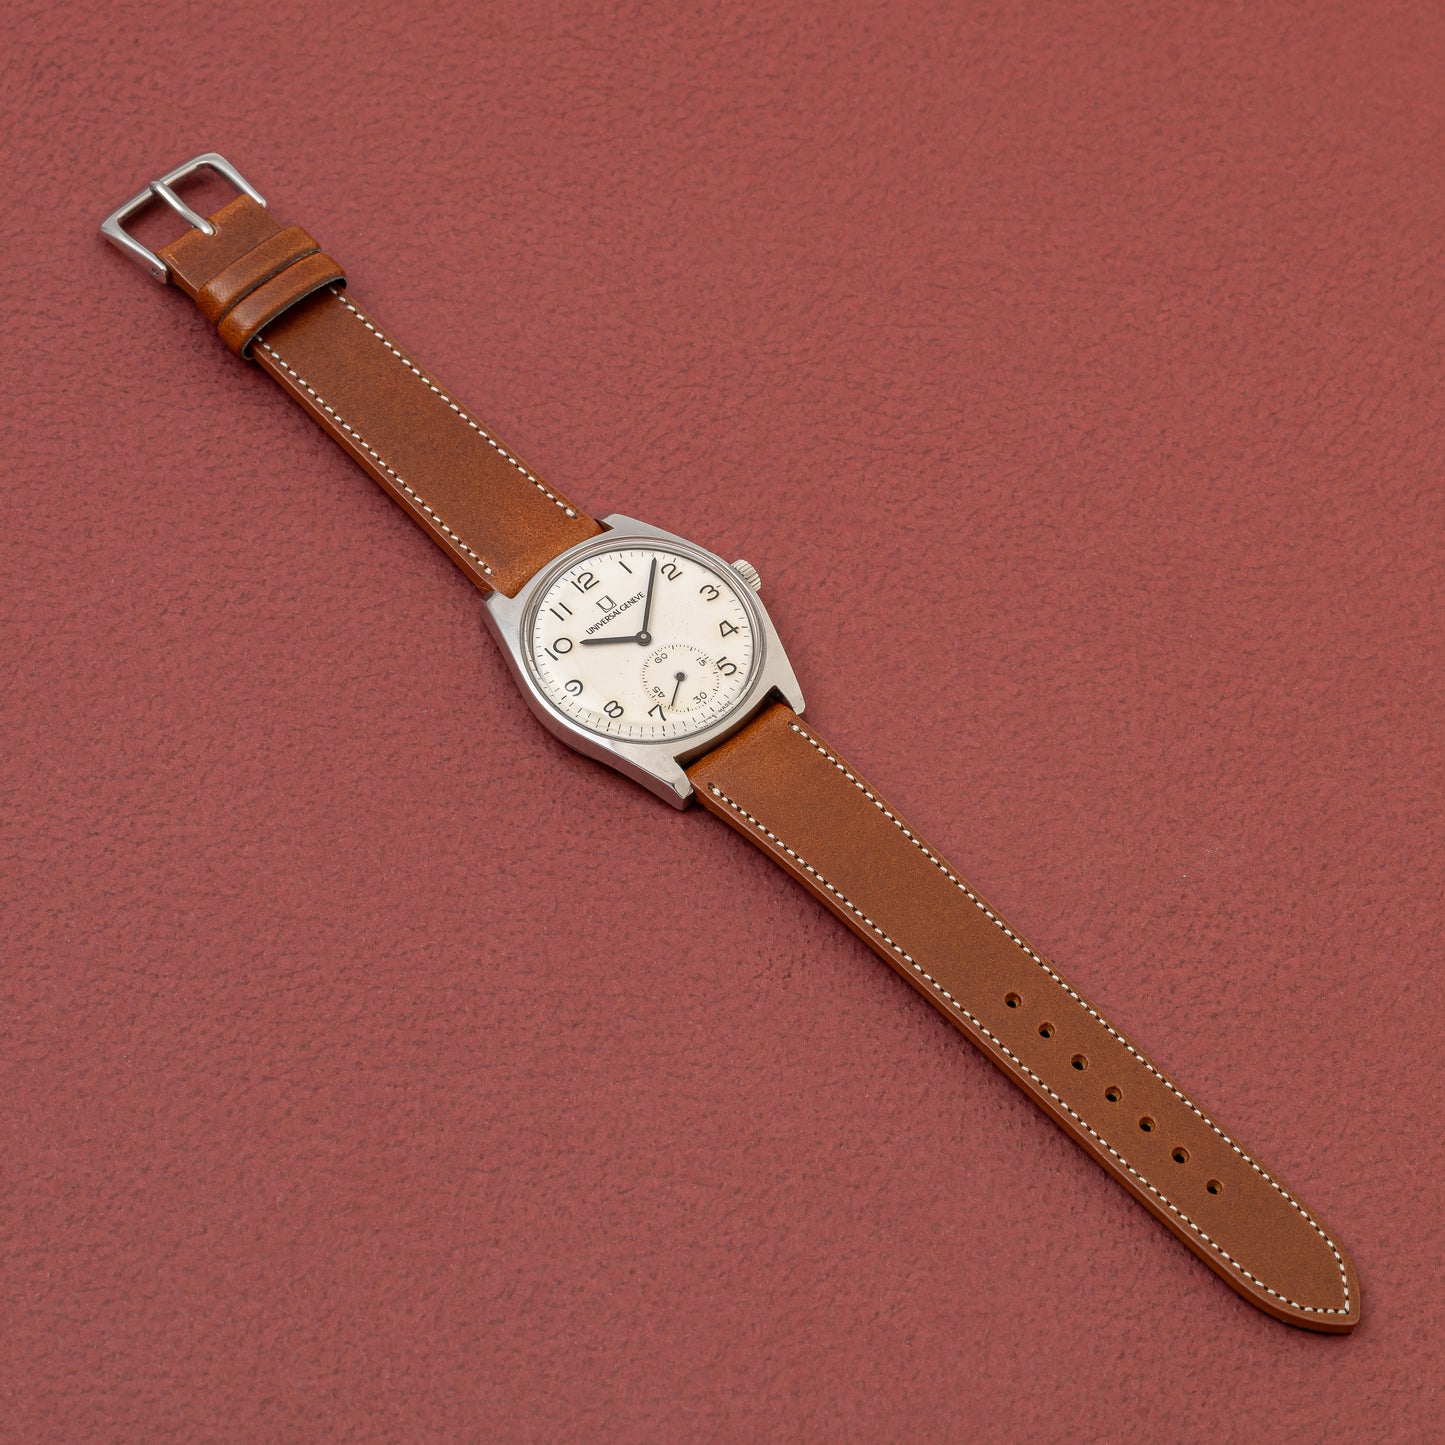 ユニバーサルジュネーブ イタリア国鉄 鉄道時計 1960年代 手巻き スモールセコンド